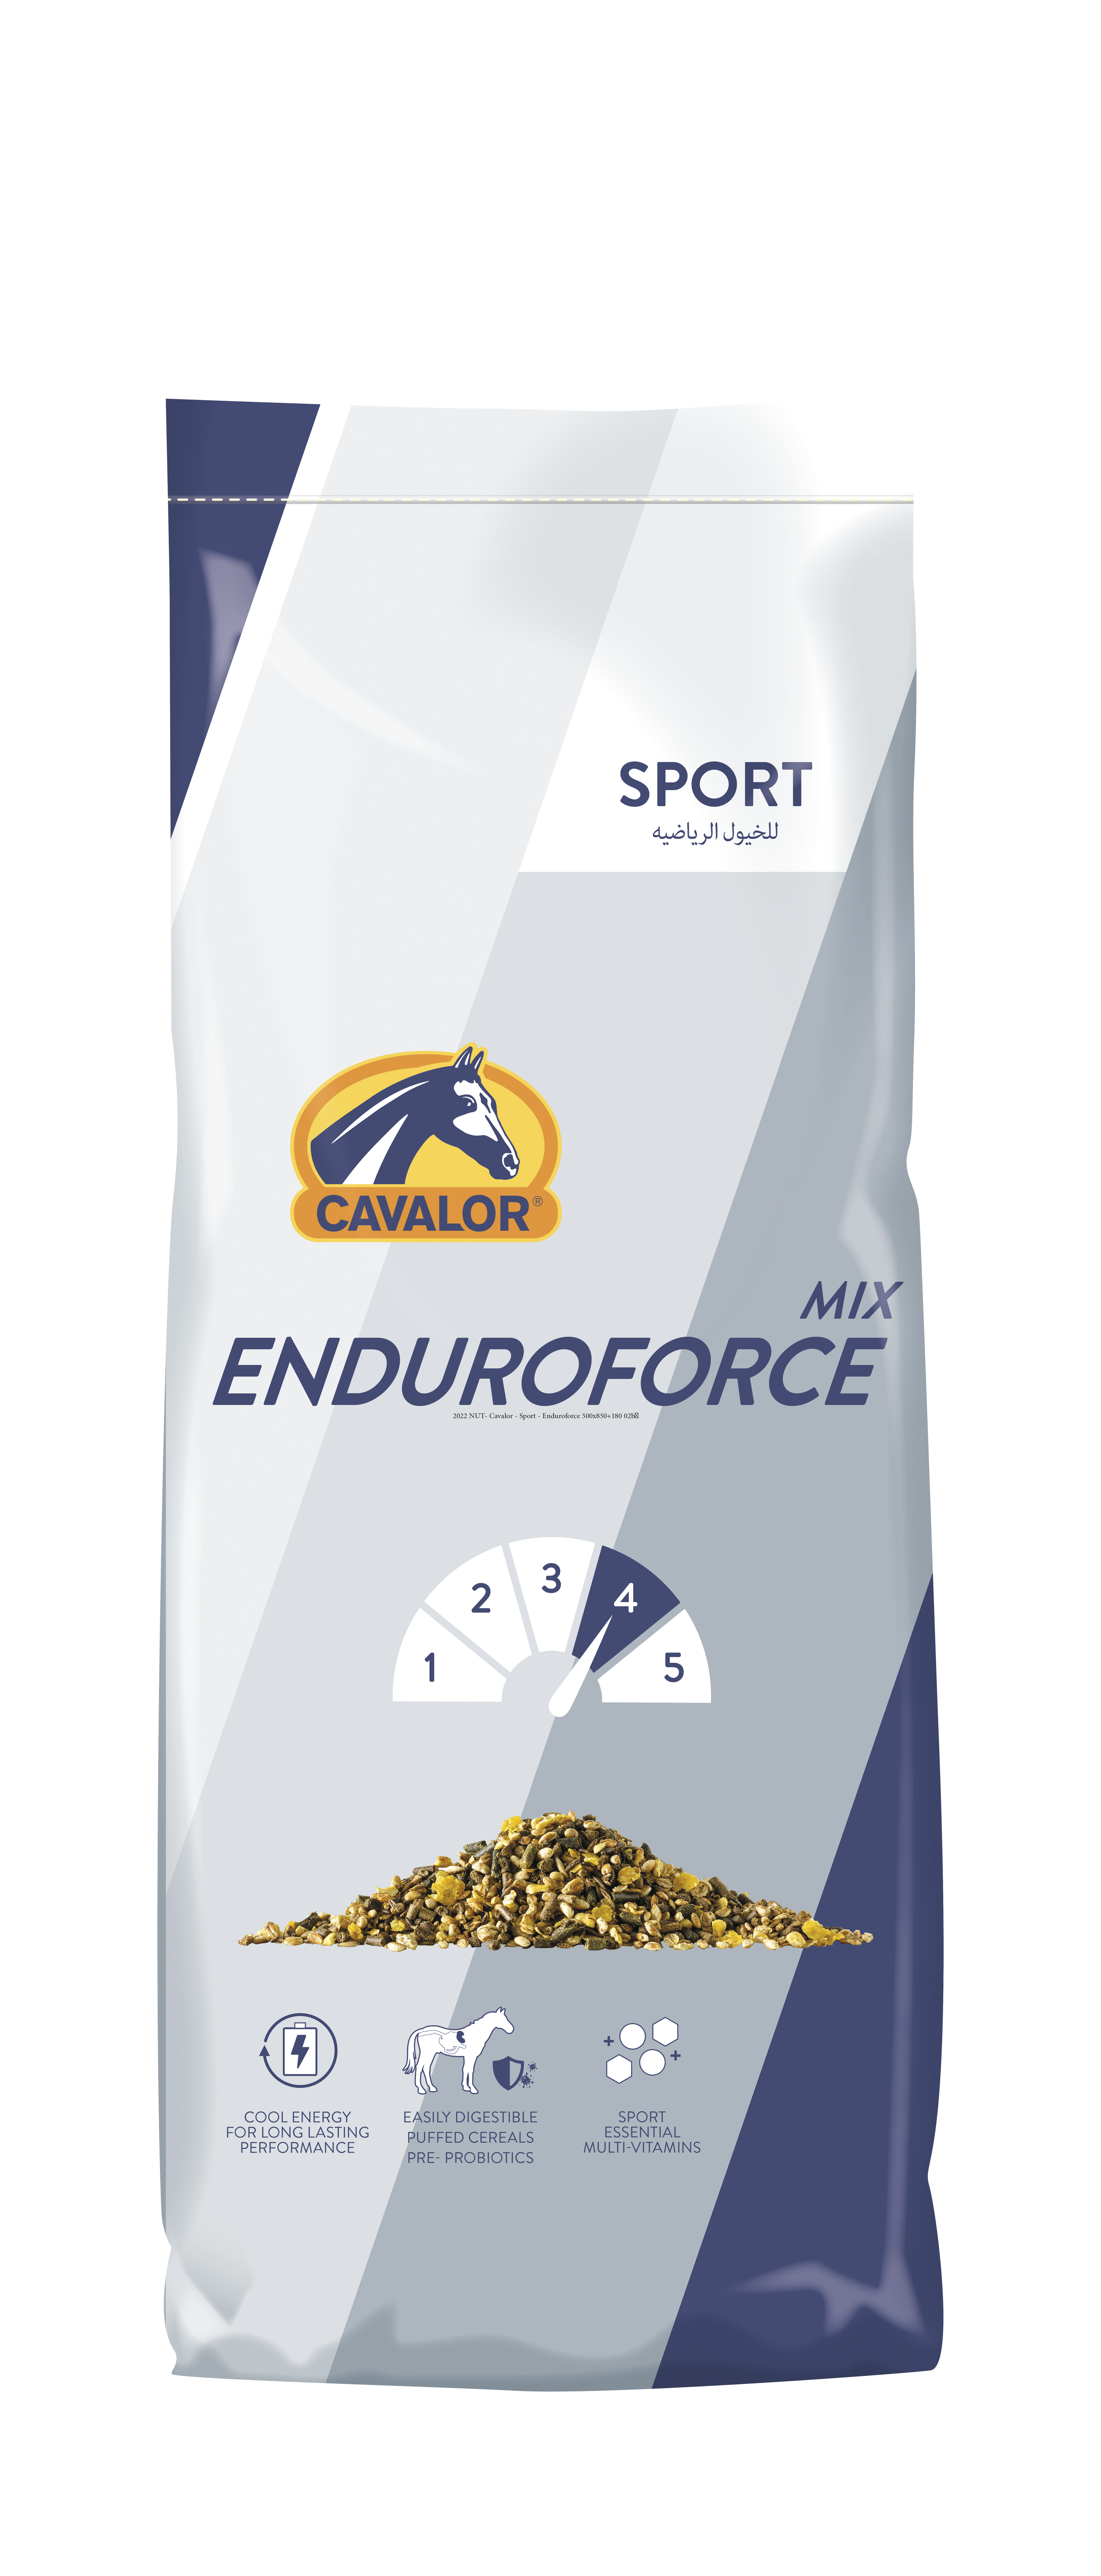 NUT- Cavalor - Sport - Enduroforce Packshot RGB Transp.png